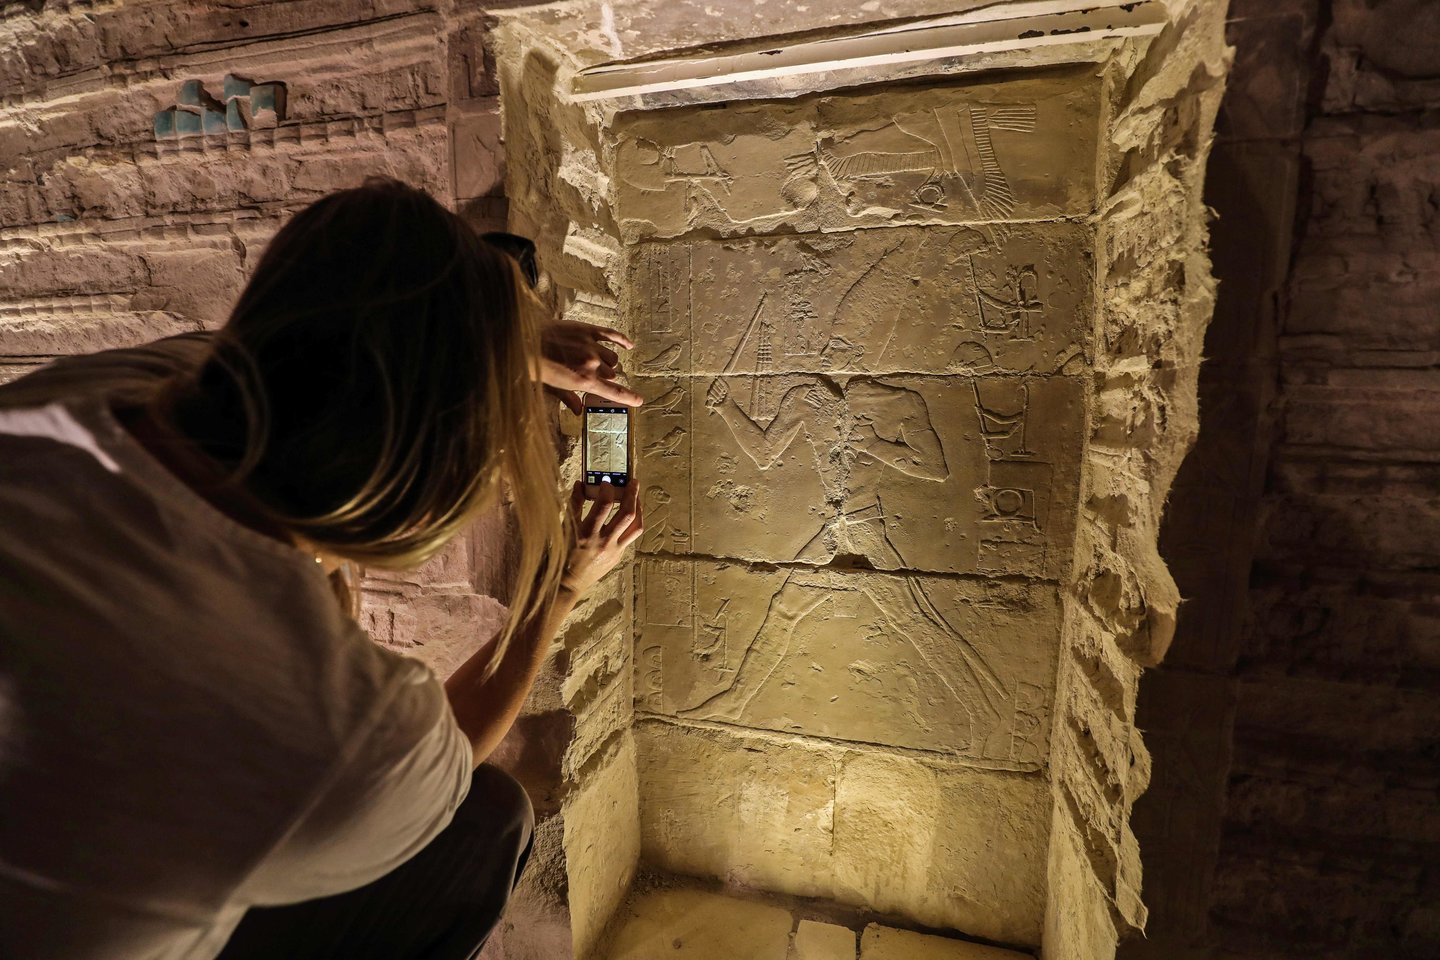  Egiptas ketvirtadienį po 14 metų trukusios restauracijos vėl atvėrė Džoserio piramidę – seniausią kada nors pastatytą piramidę.<br> AFP / Scanpix nuotr.